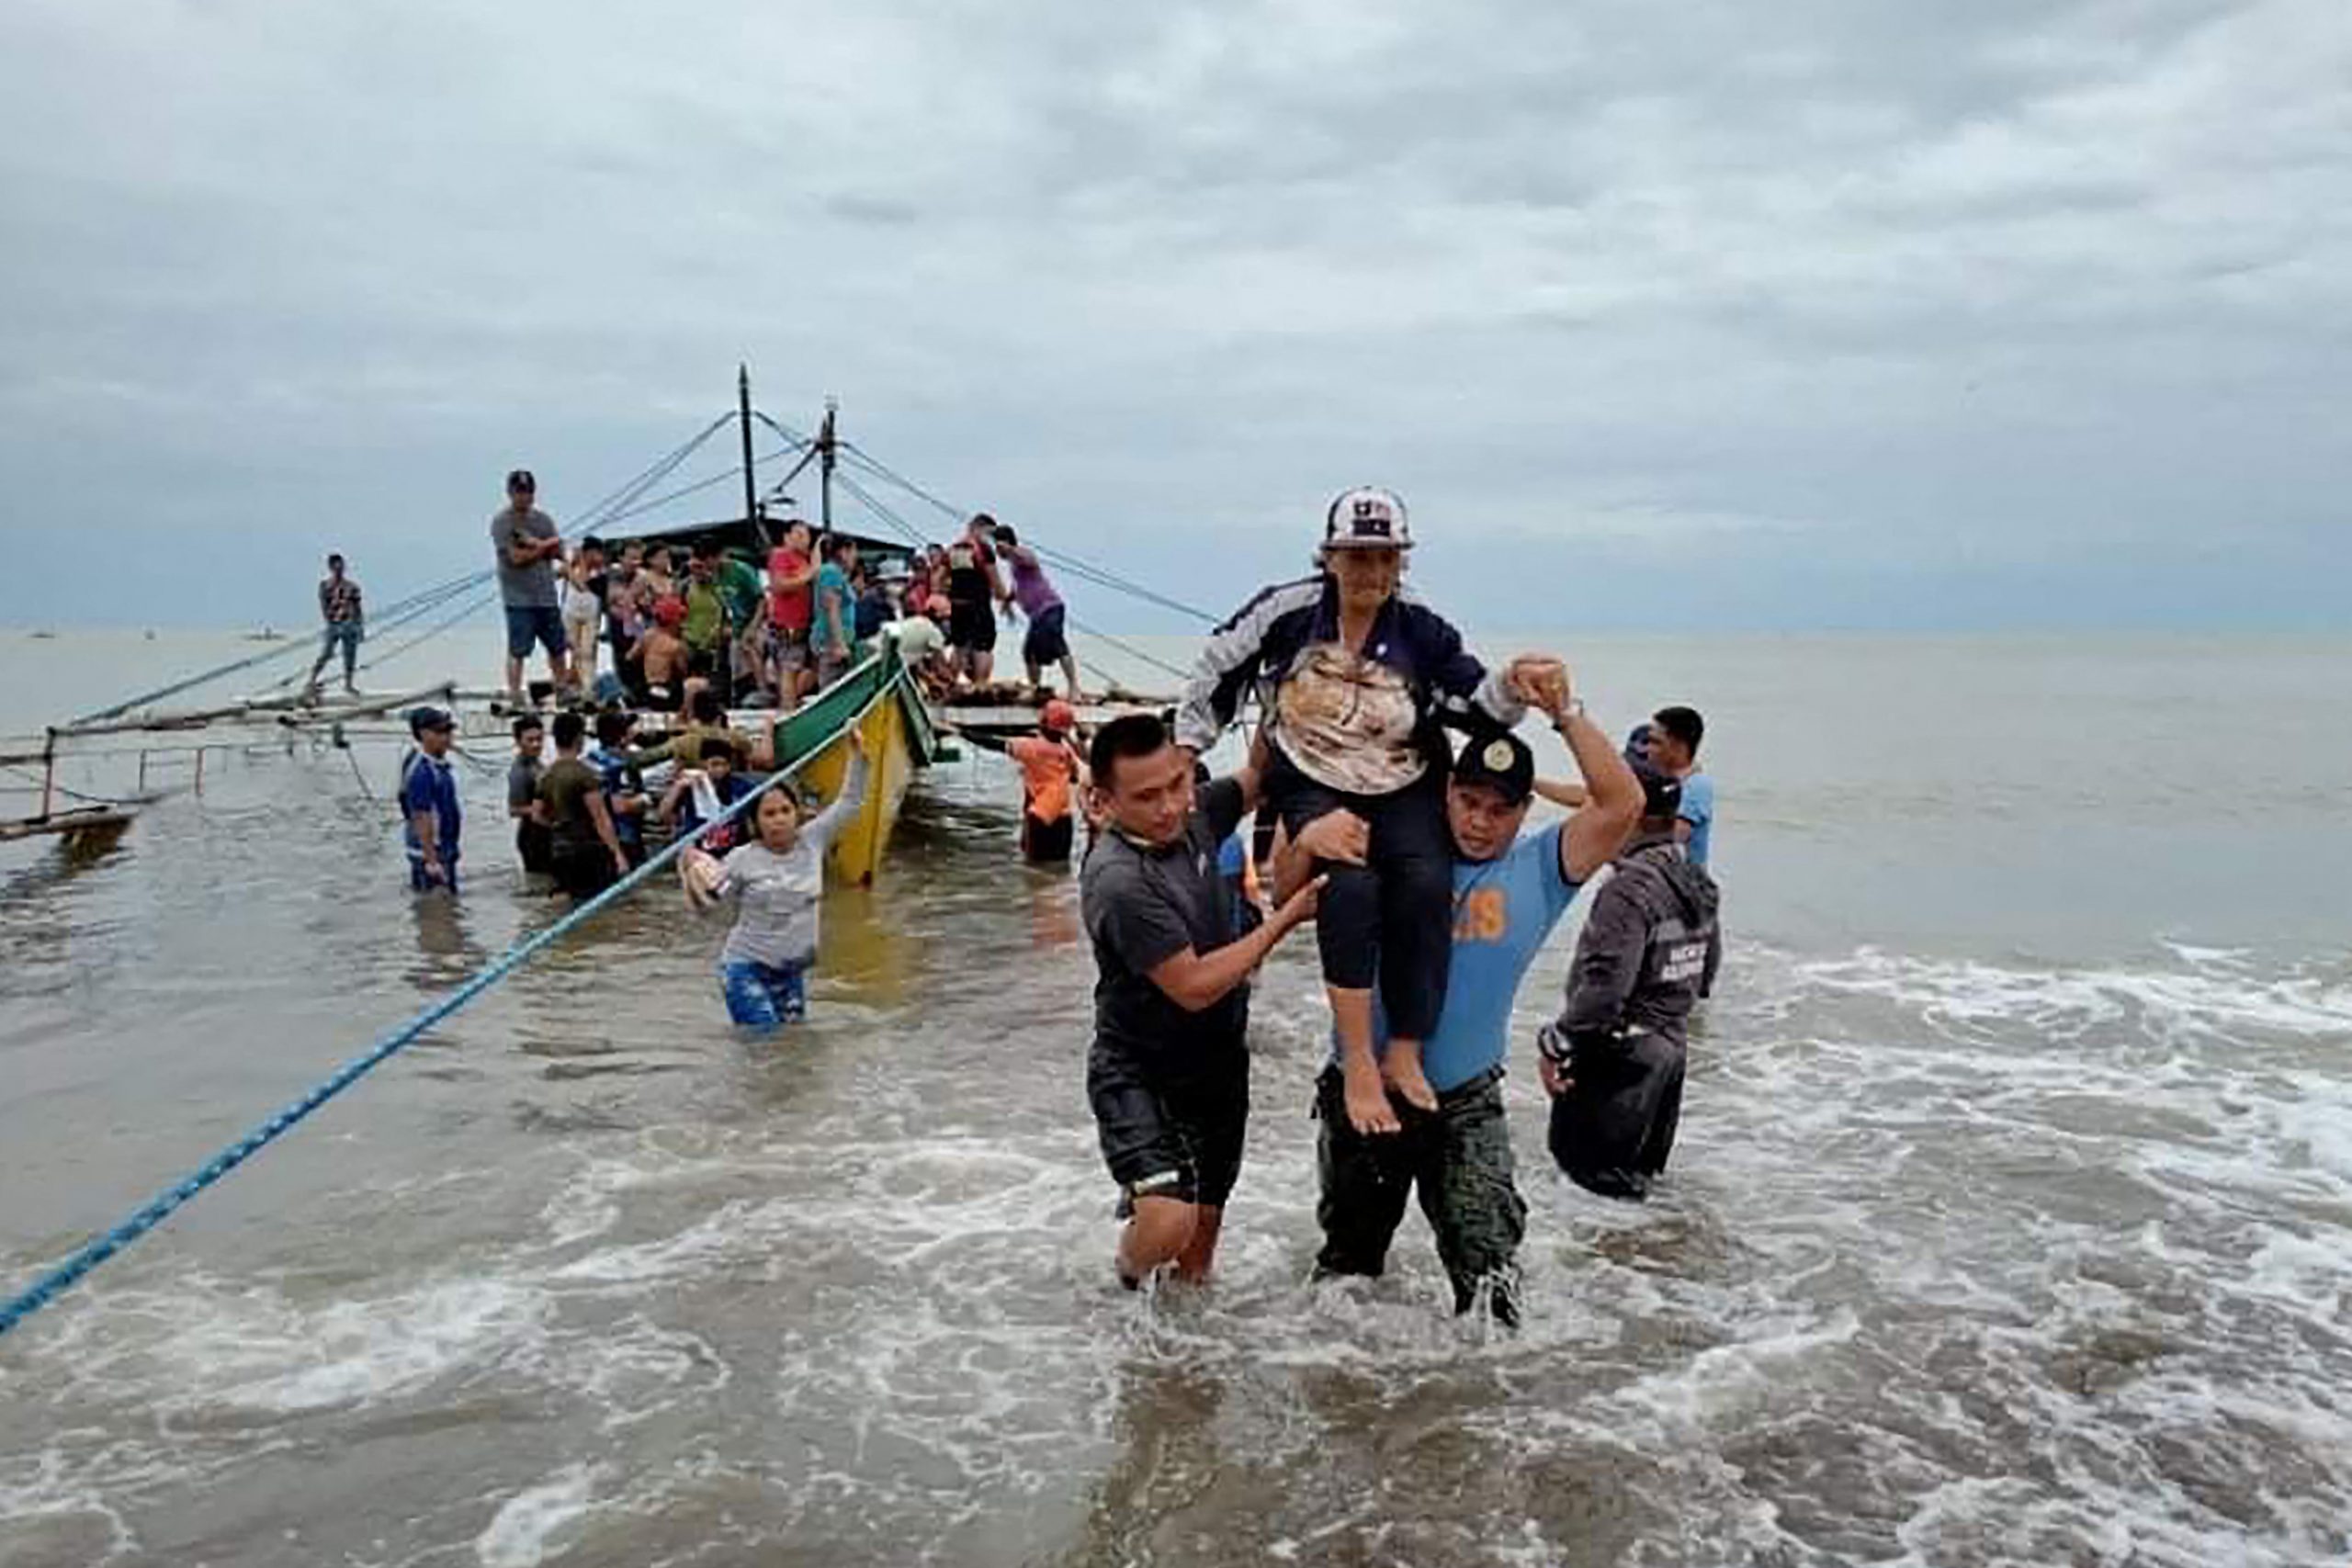  菲律宾土崩水灾死者增至58人